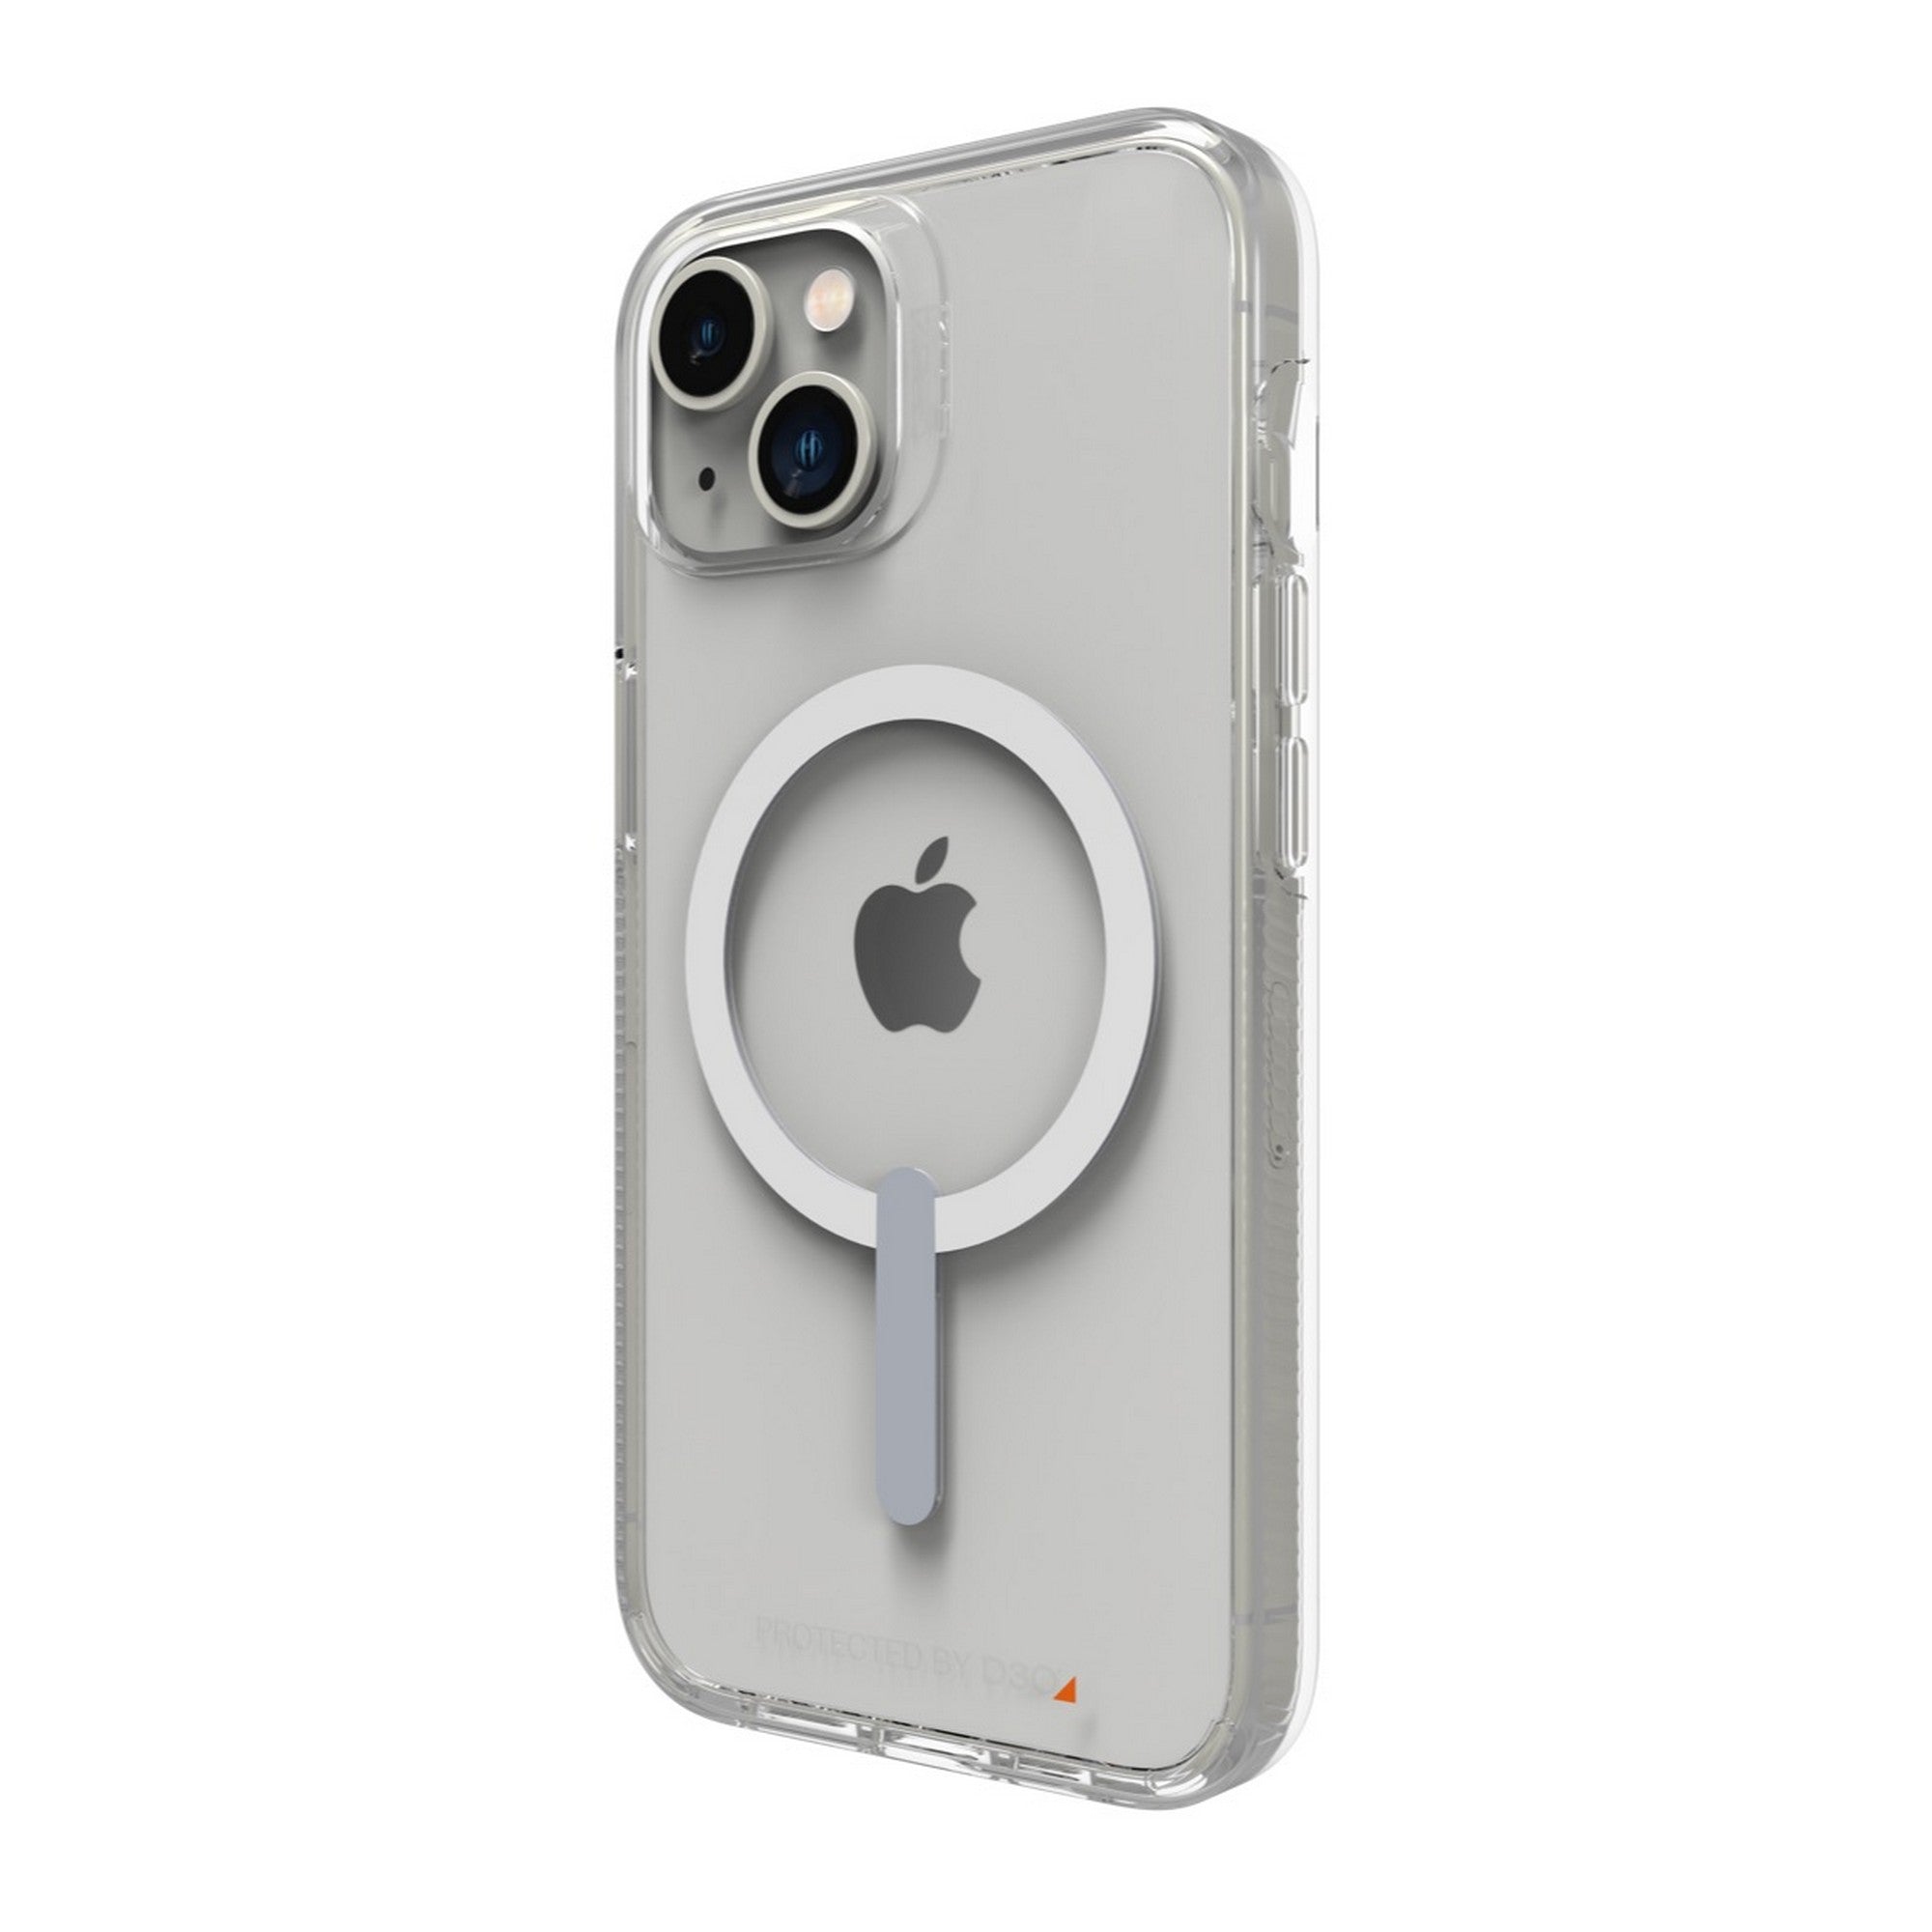 Carcasa transparente con MagSafe para el iPhone 13 - Apple (CL)